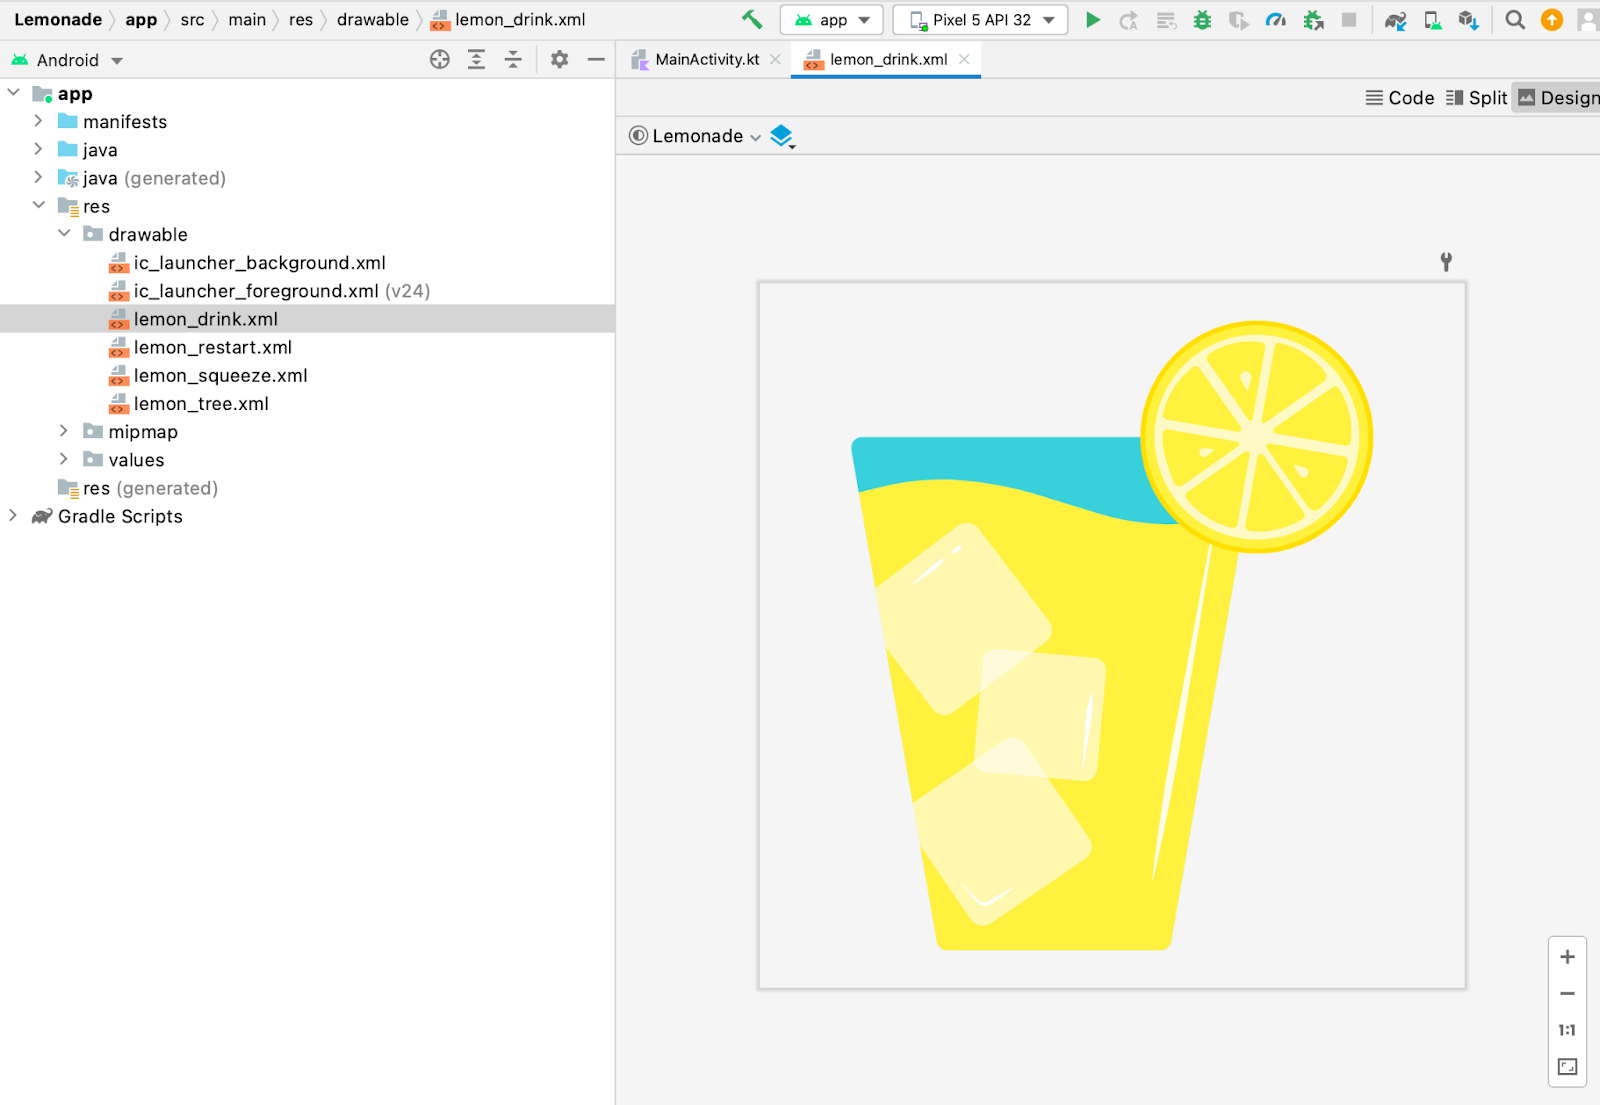 在 Android Studio 的「Project」窗格中，已選取 lemon_drink.xml 可繪項目檔案。「Design」窗格中已開啟可繪項目檔案的預覽畫面，顯示一大杯檸檬汁的圖片。